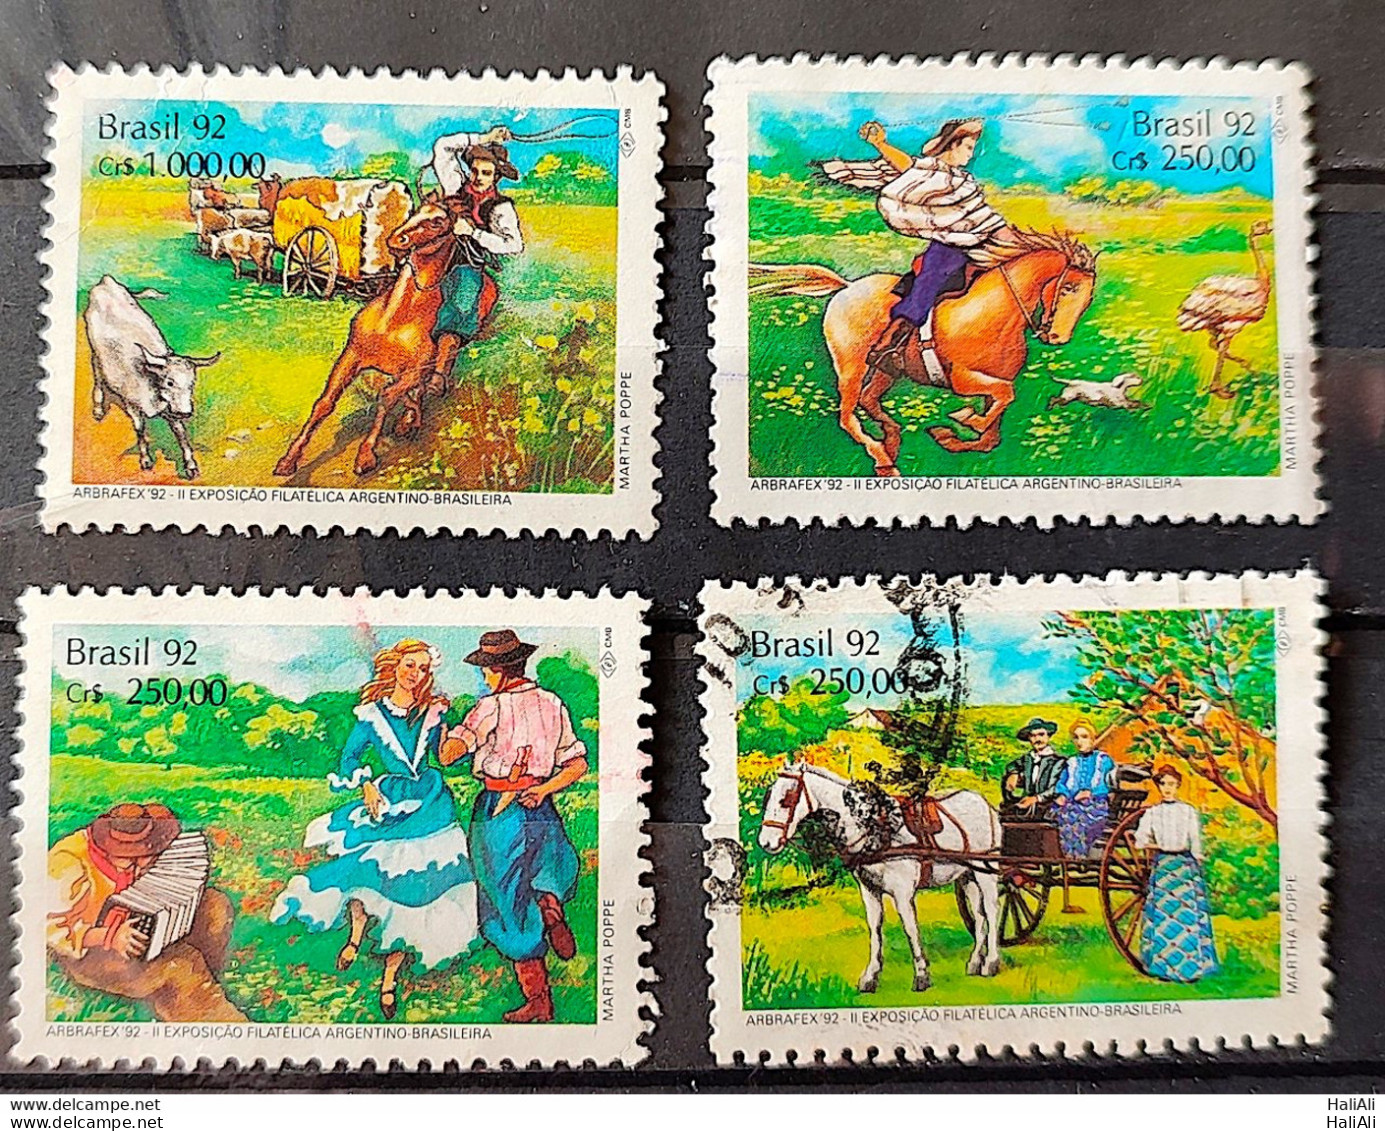 C 1778 Brazil Stamp Arbrafex Argentina Costumes Gauchos Music Gaita 1992 Complete Series Circulated 5 - Usati